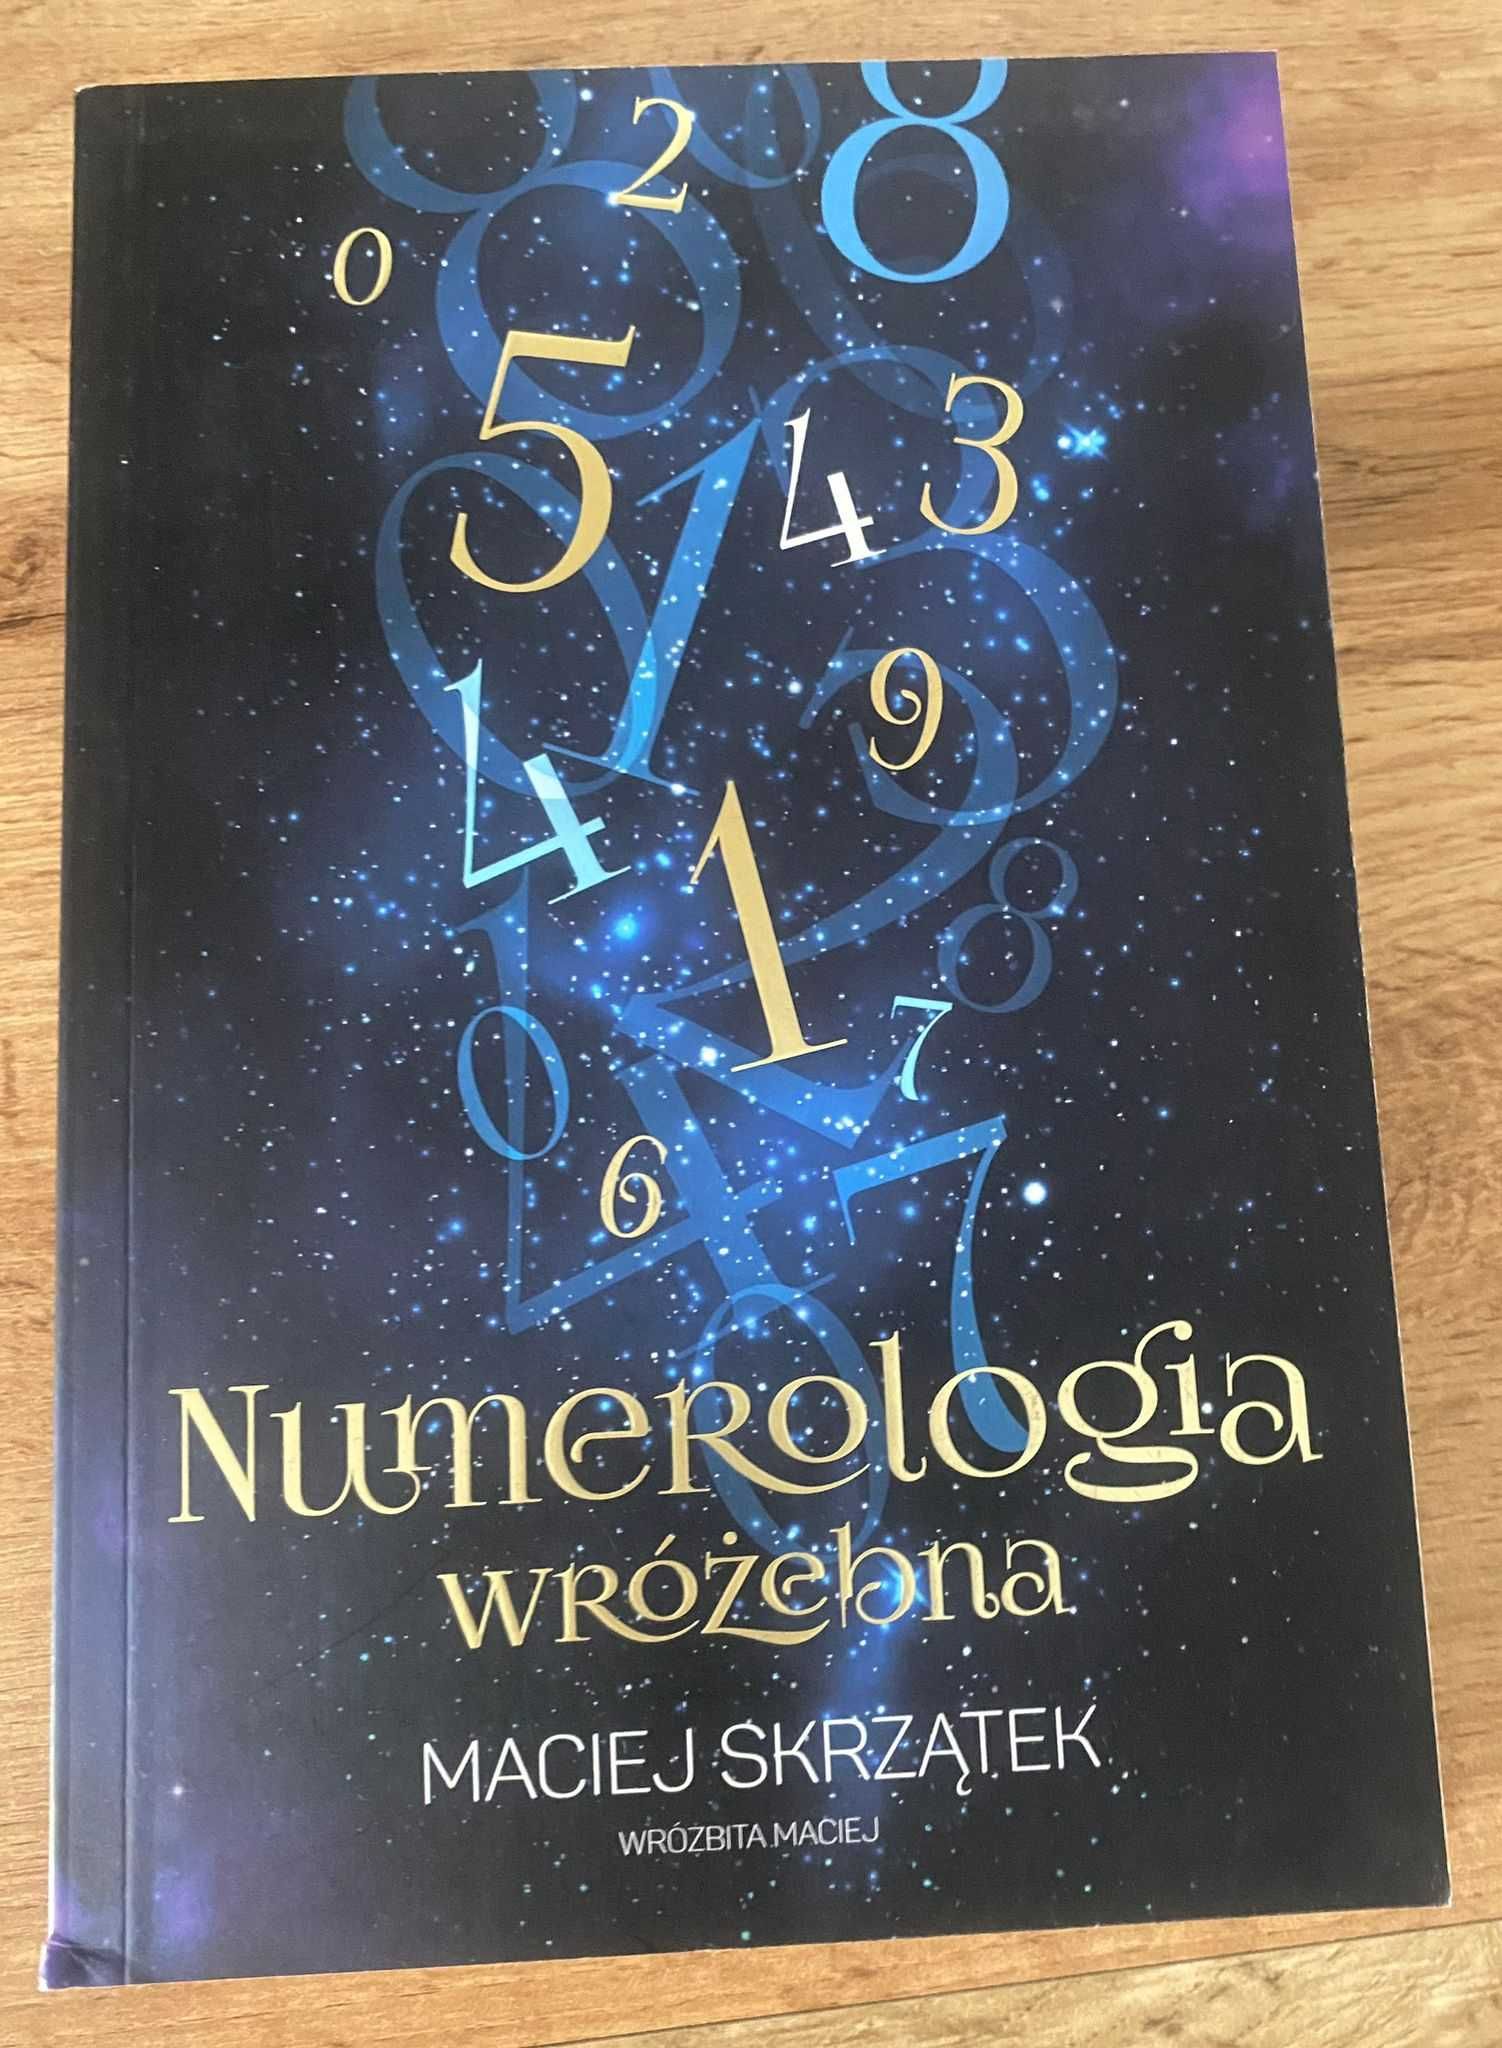 Książka  ,,Numerologia wróżebna''